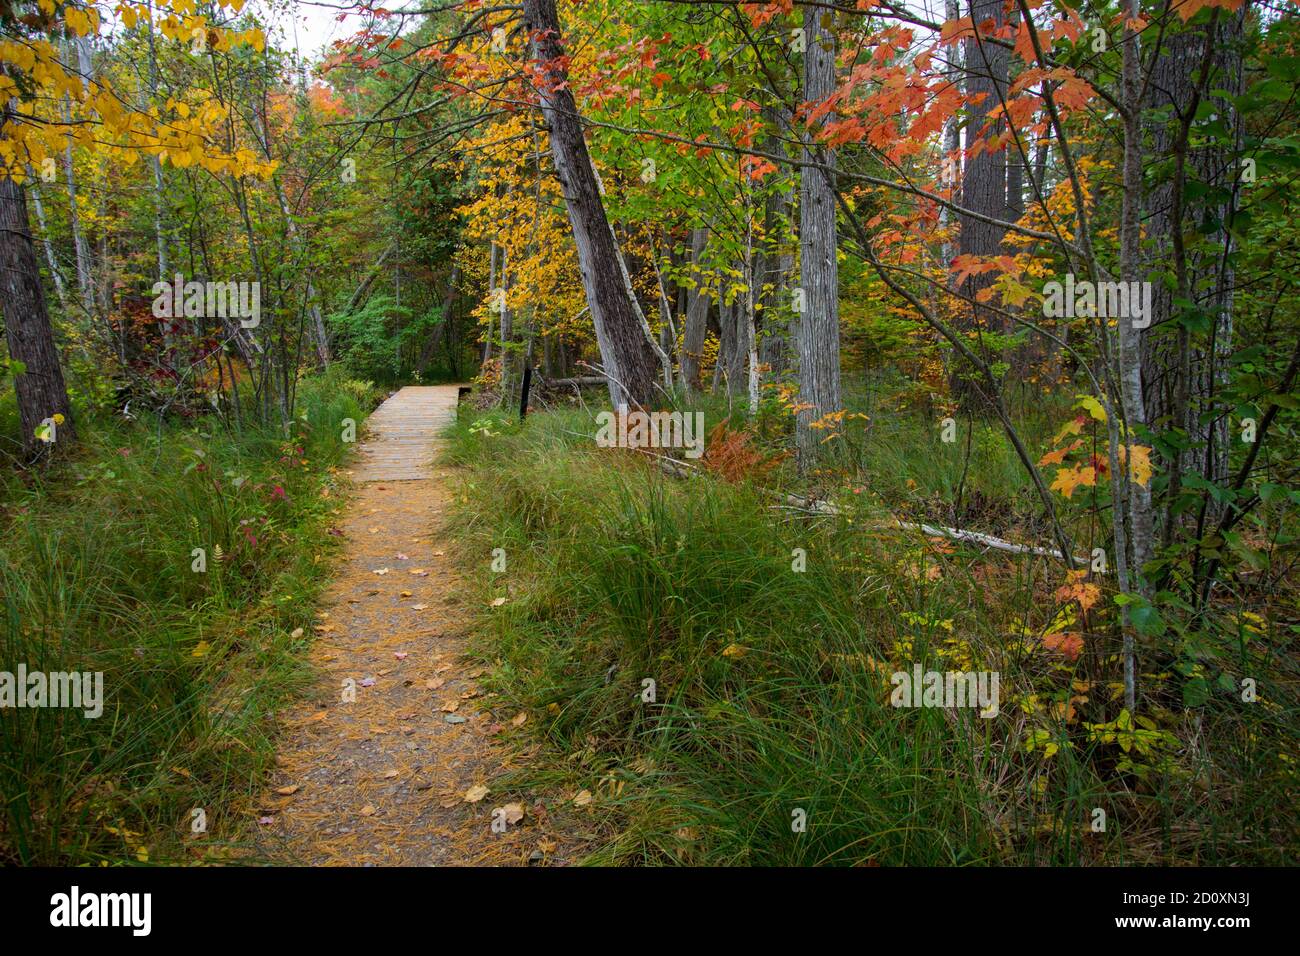 Michigan randonnée d'automne. Couleurs vives de l'automne le long d'un sentier de randonnée à travers la forêt de feuillus du parc régional Hartwick Pines à Grayling, Michigan. Banque D'Images